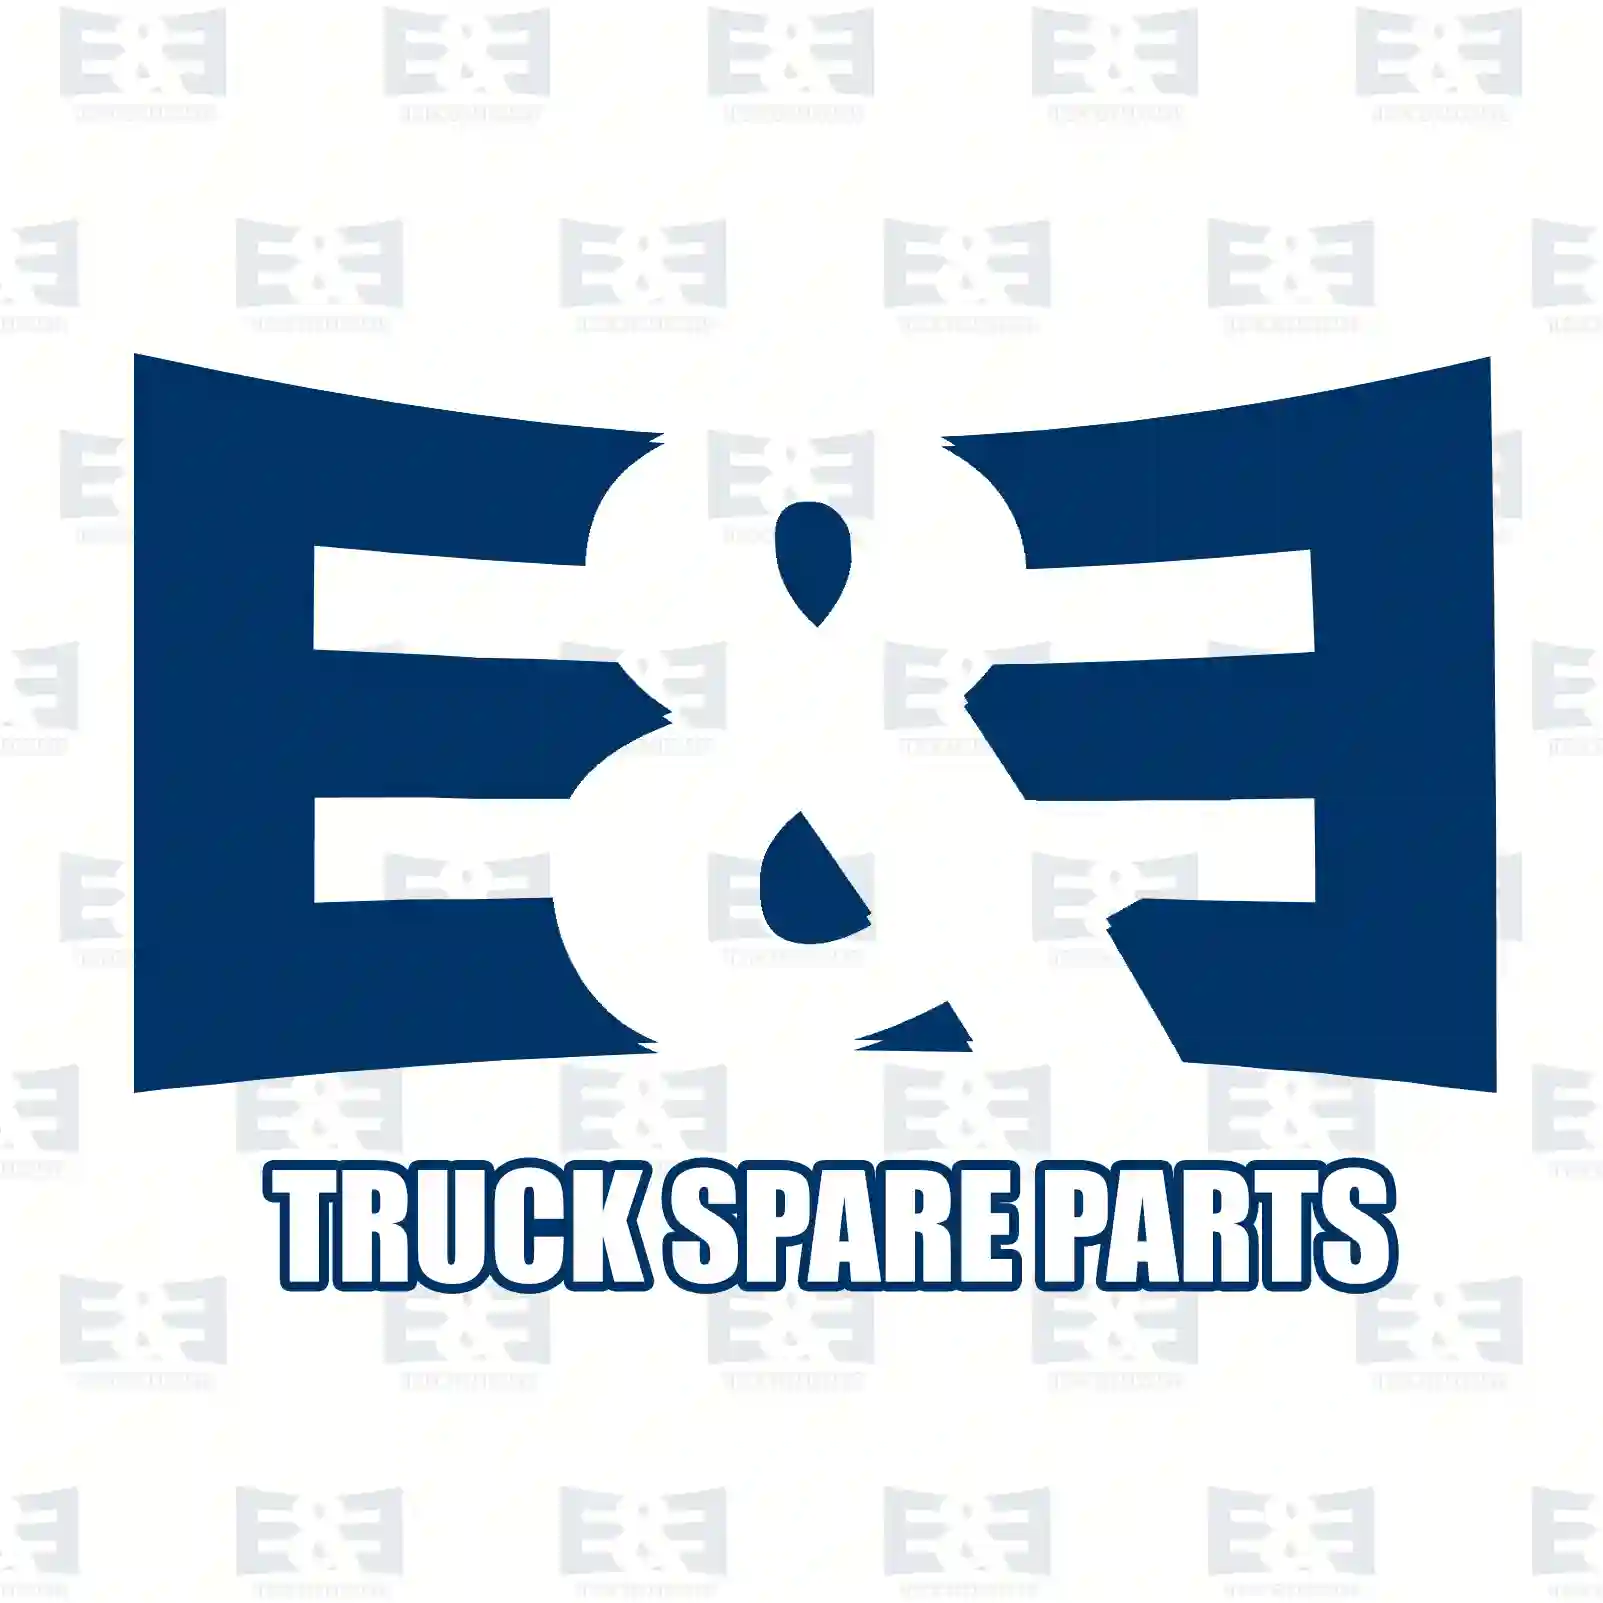 Brake shoe spring, 2E2295492, 21221224, 21221224PK10 ||  2E2295492 E&E Truck Spare Parts | Truck Spare Parts, Auotomotive Spare Parts Brake shoe spring, 2E2295492, 21221224, 21221224PK10 ||  2E2295492 E&E Truck Spare Parts | Truck Spare Parts, Auotomotive Spare Parts